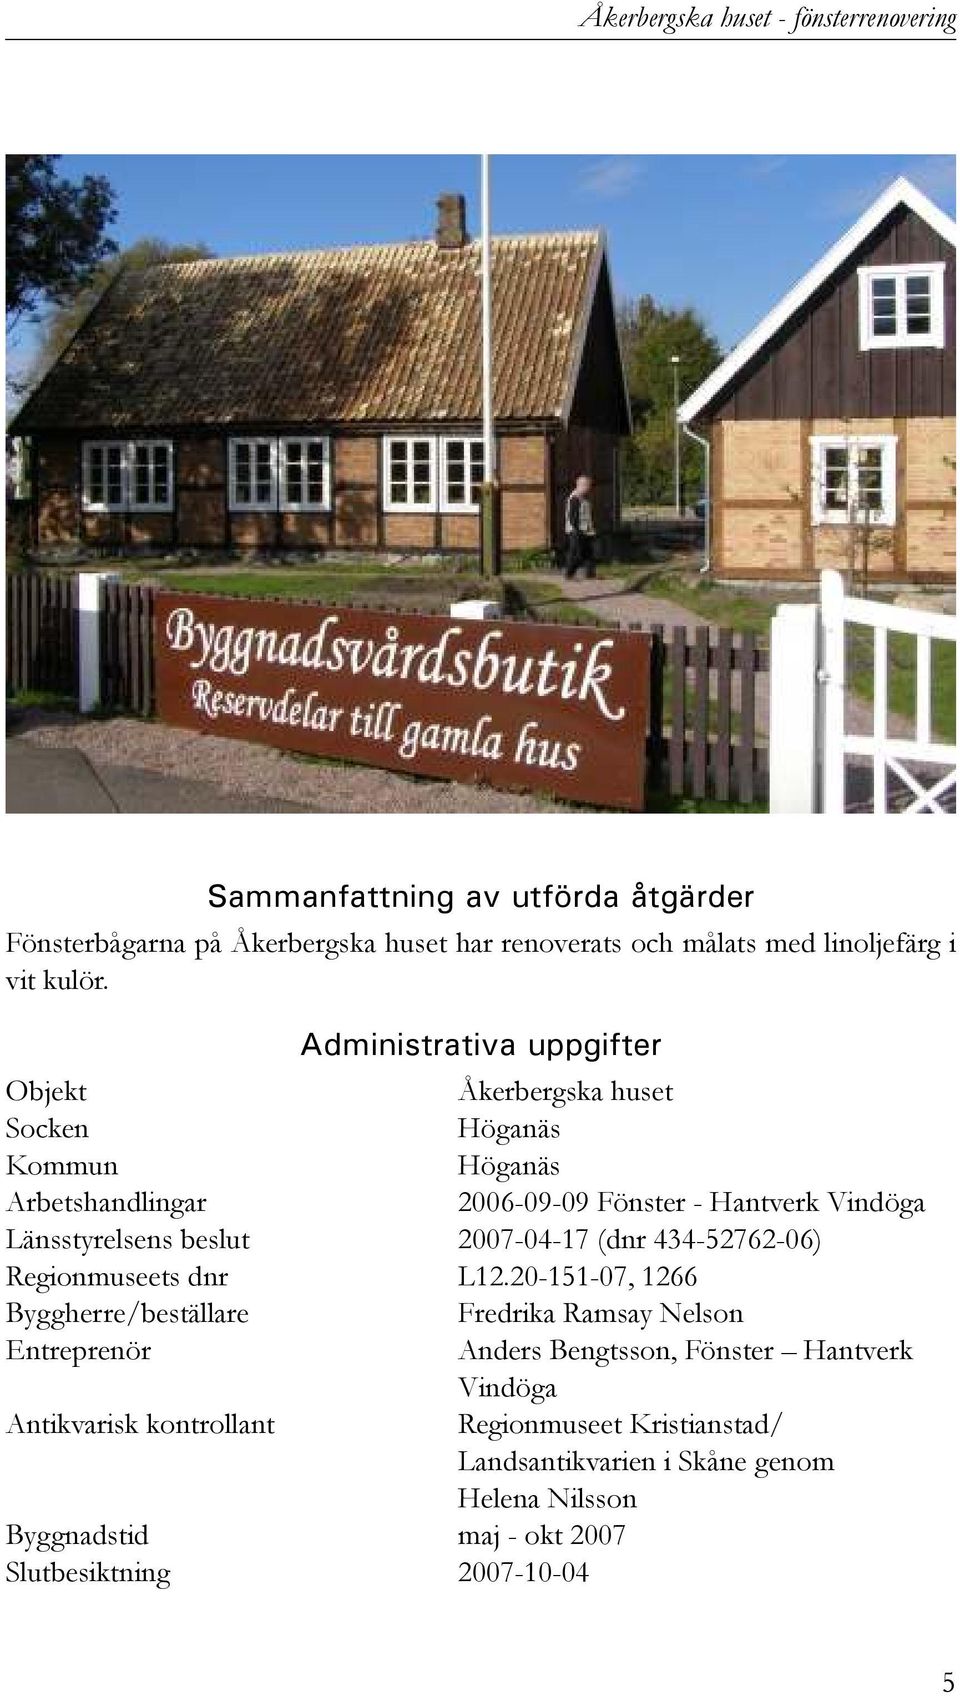 Administrativa uppgifter Objekt Åkerbergska huset Socken Höganäs Kommun Höganäs Arbetshandlingar 2006-09-09 Fönster - Hantverk Vindöga Länsstyrelsens beslut